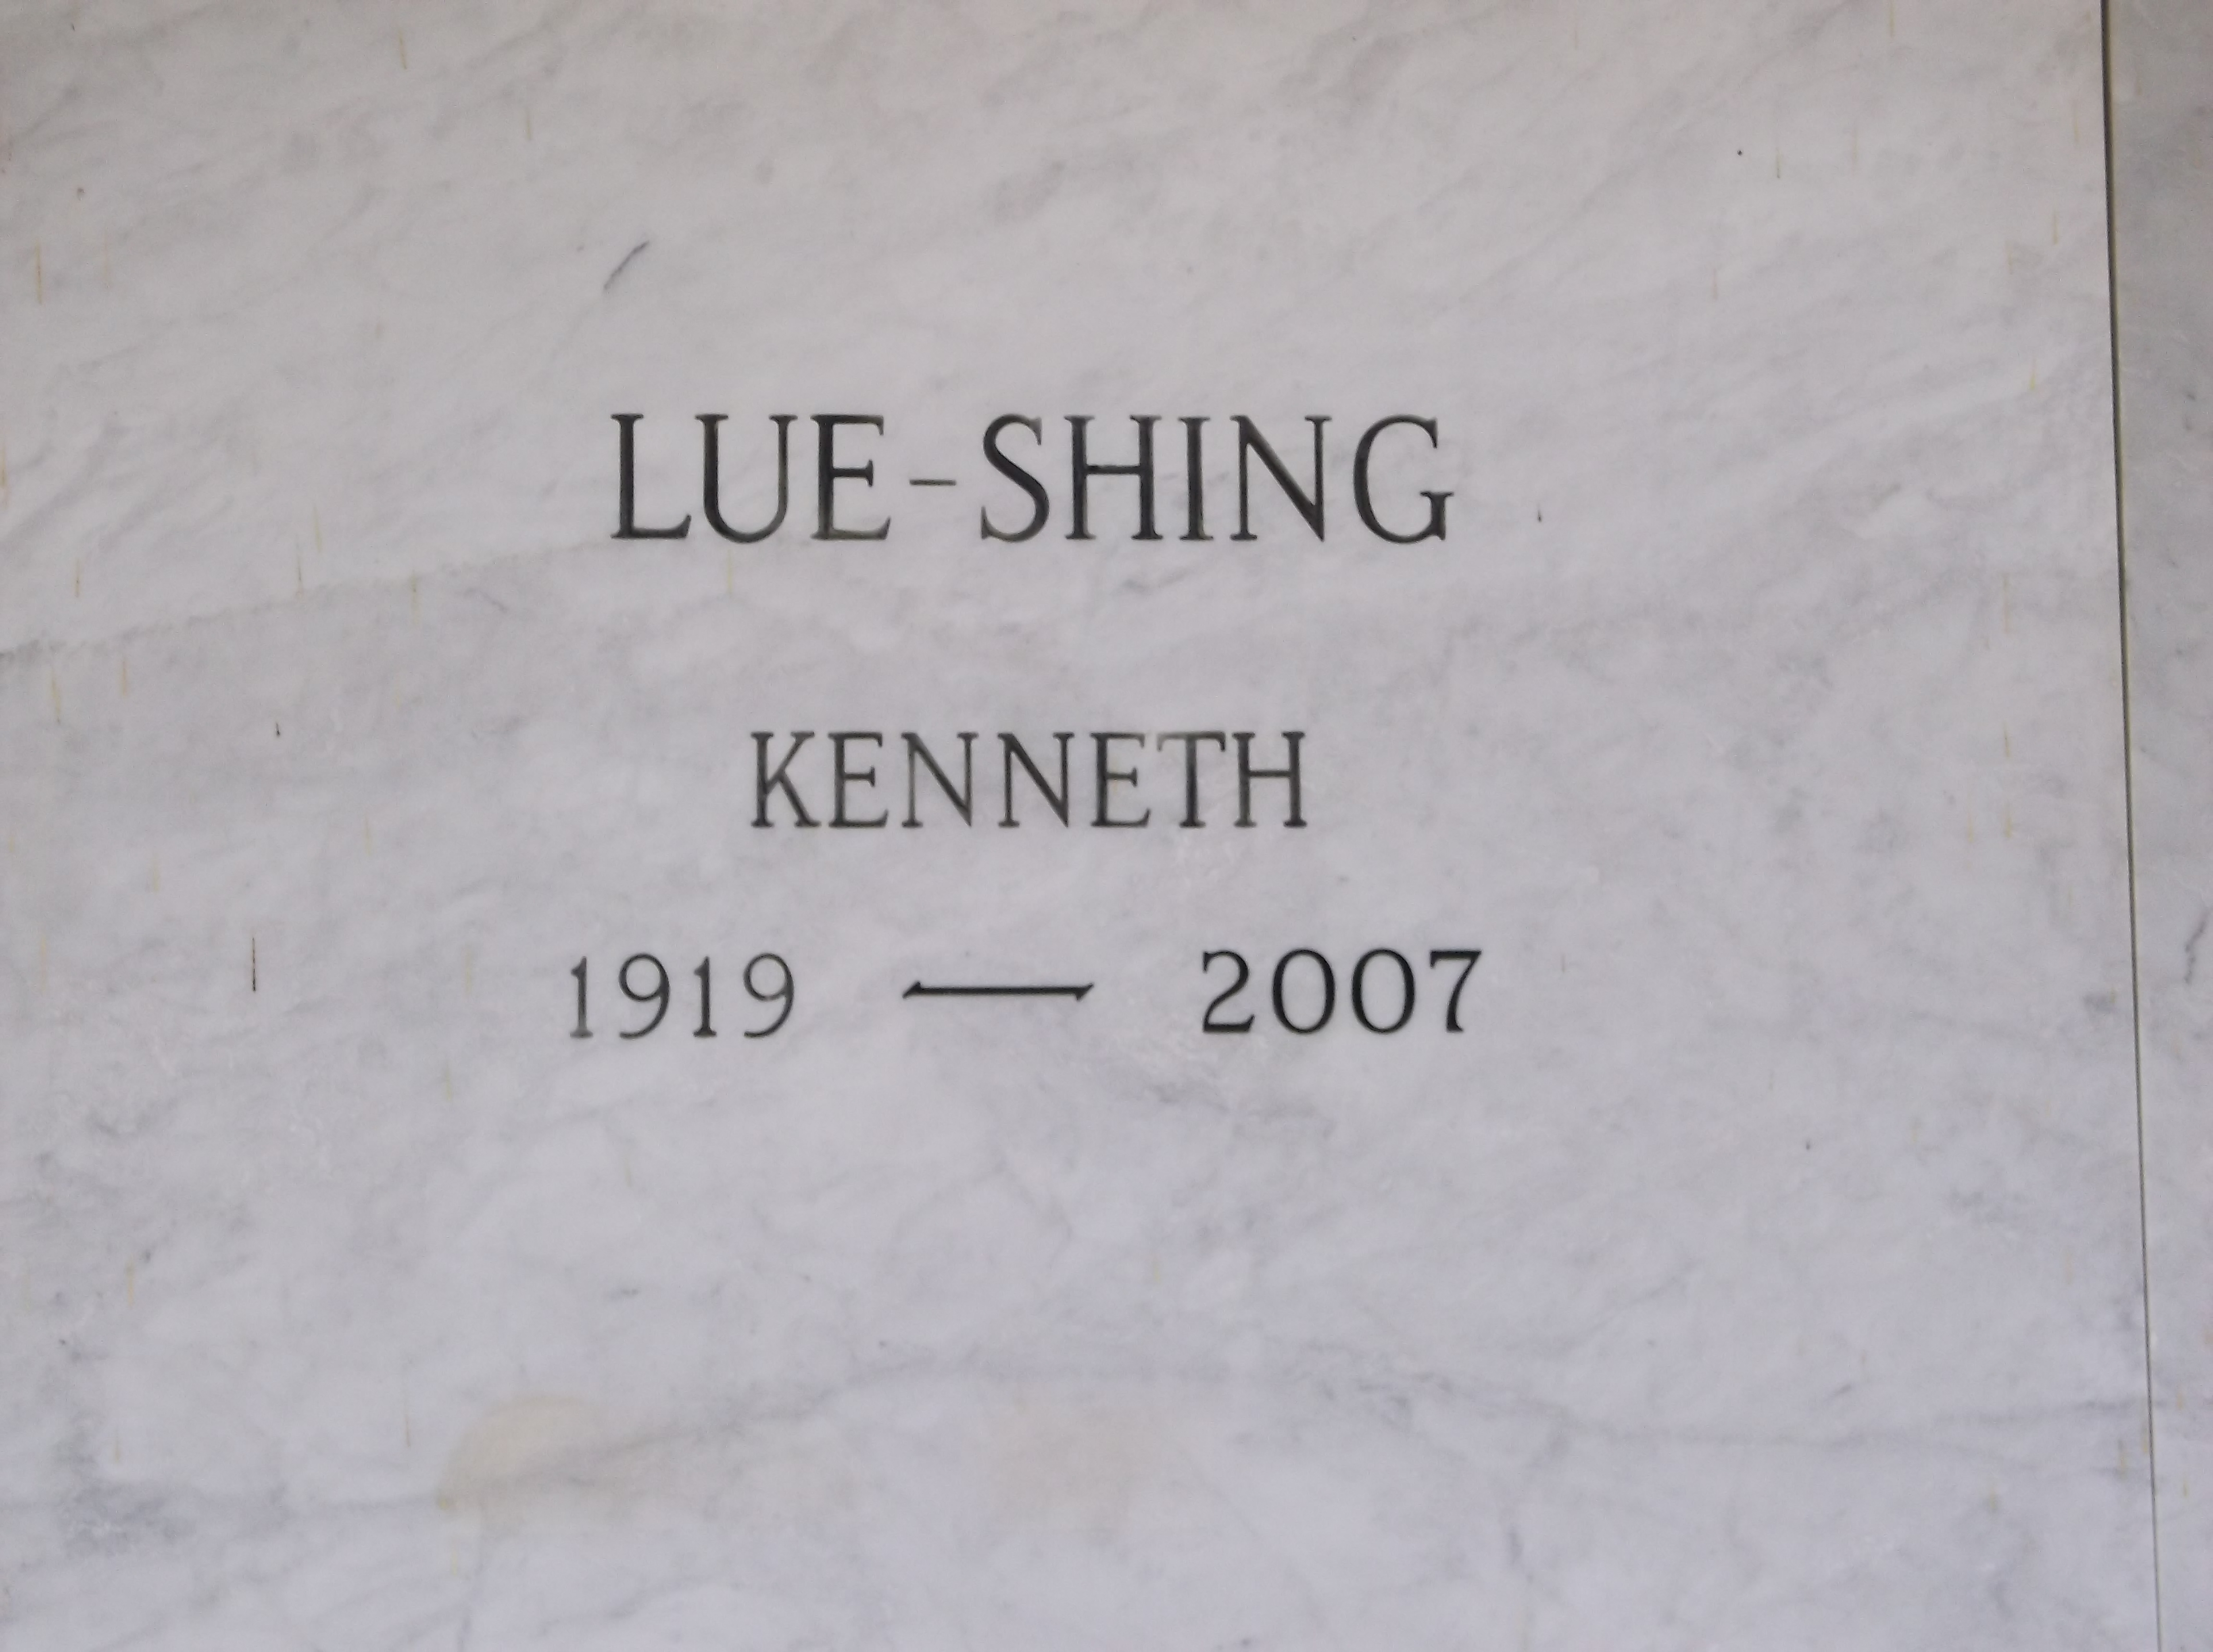 Kenneth Lue-Shing